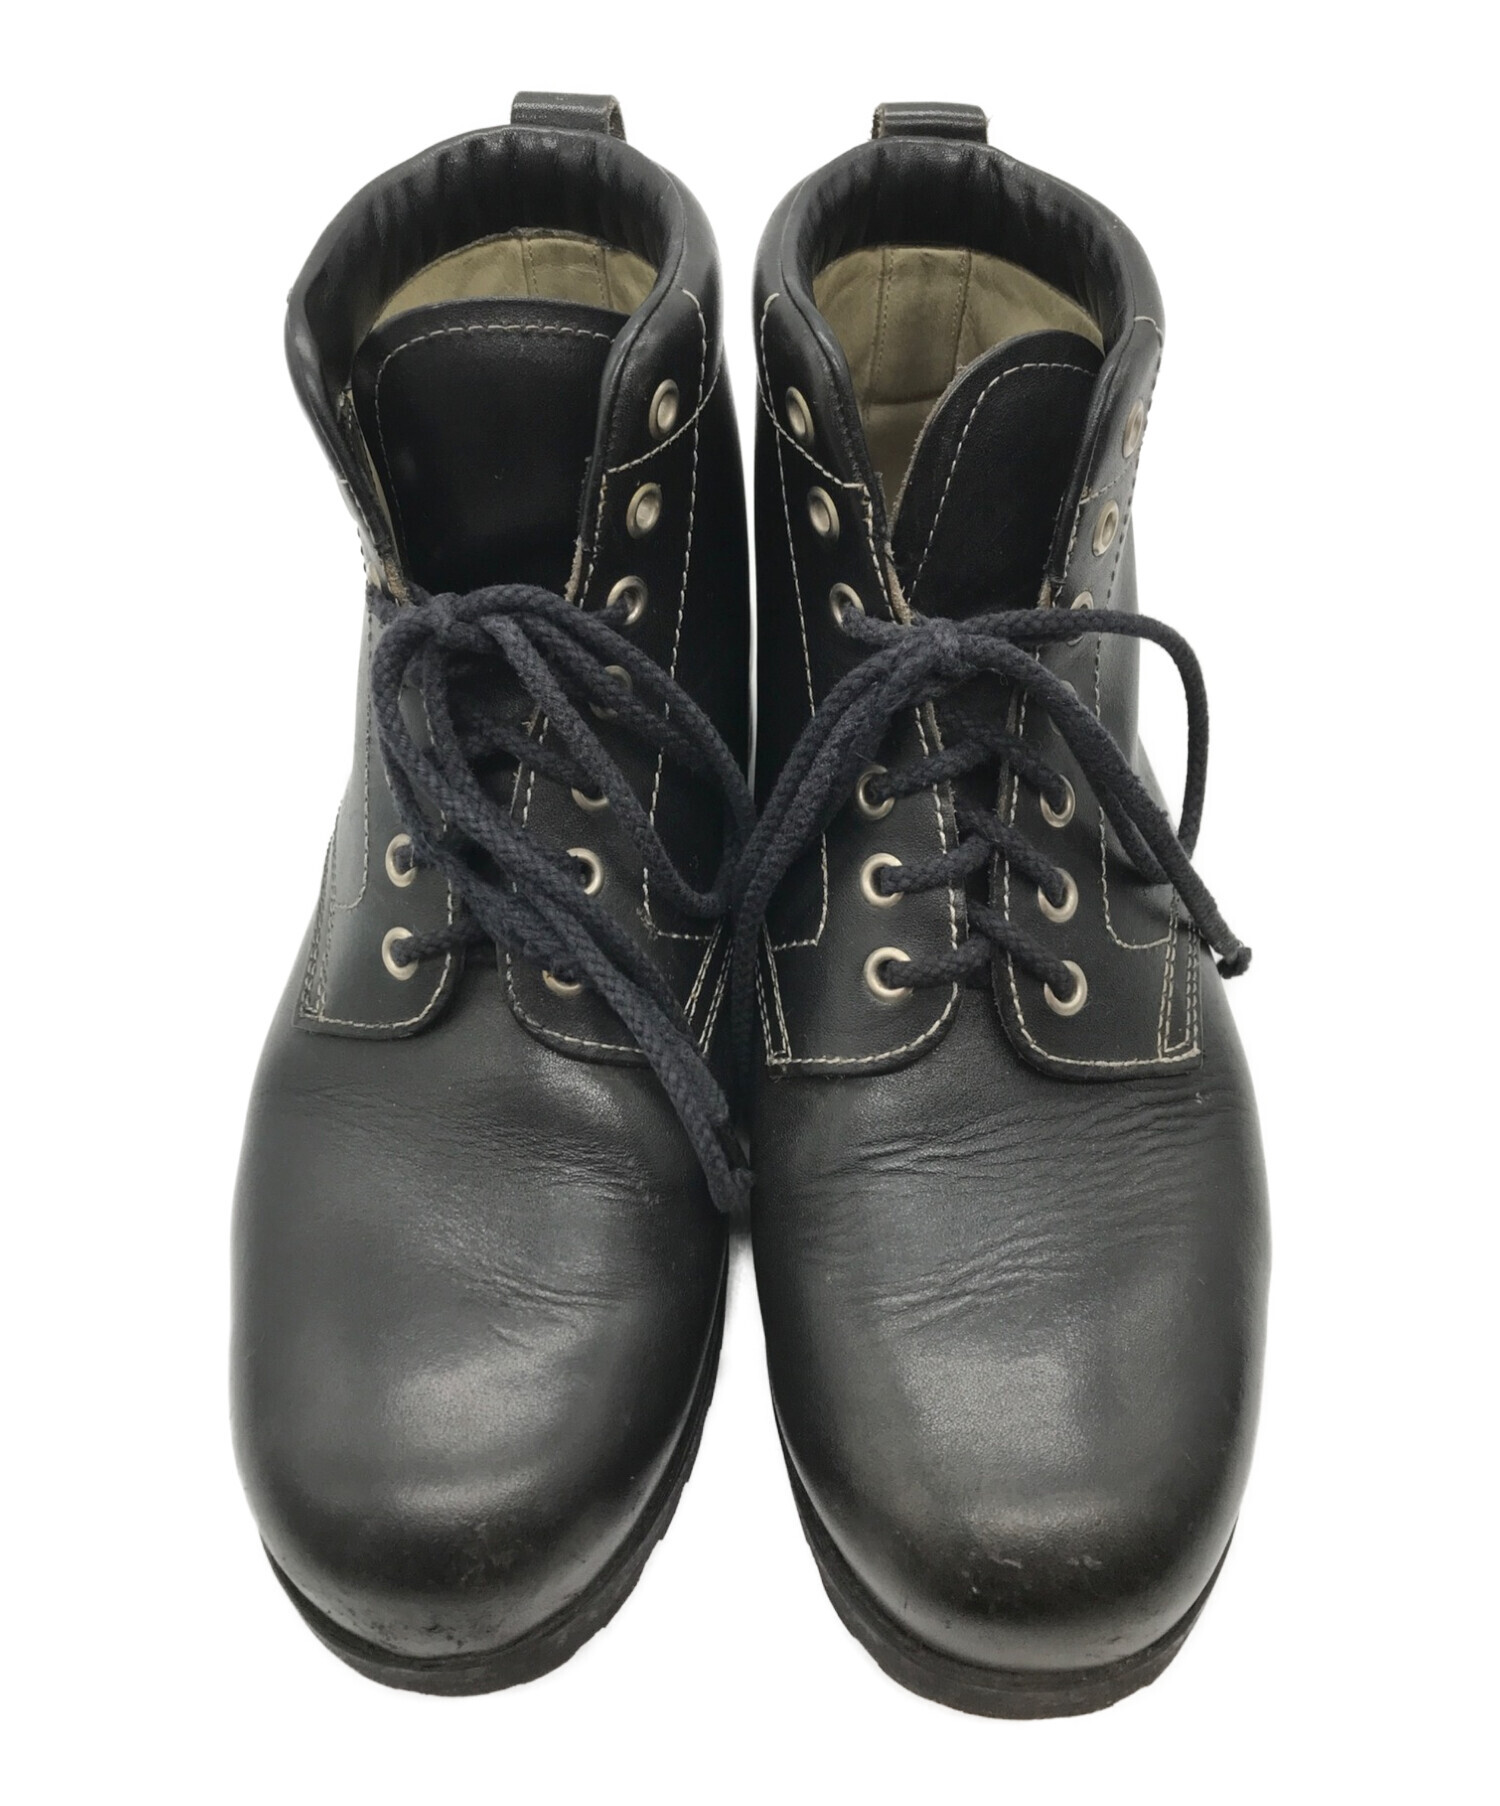 HELMUT LANG (ヘルムートラング) ブーツ ブラック サイズ:7